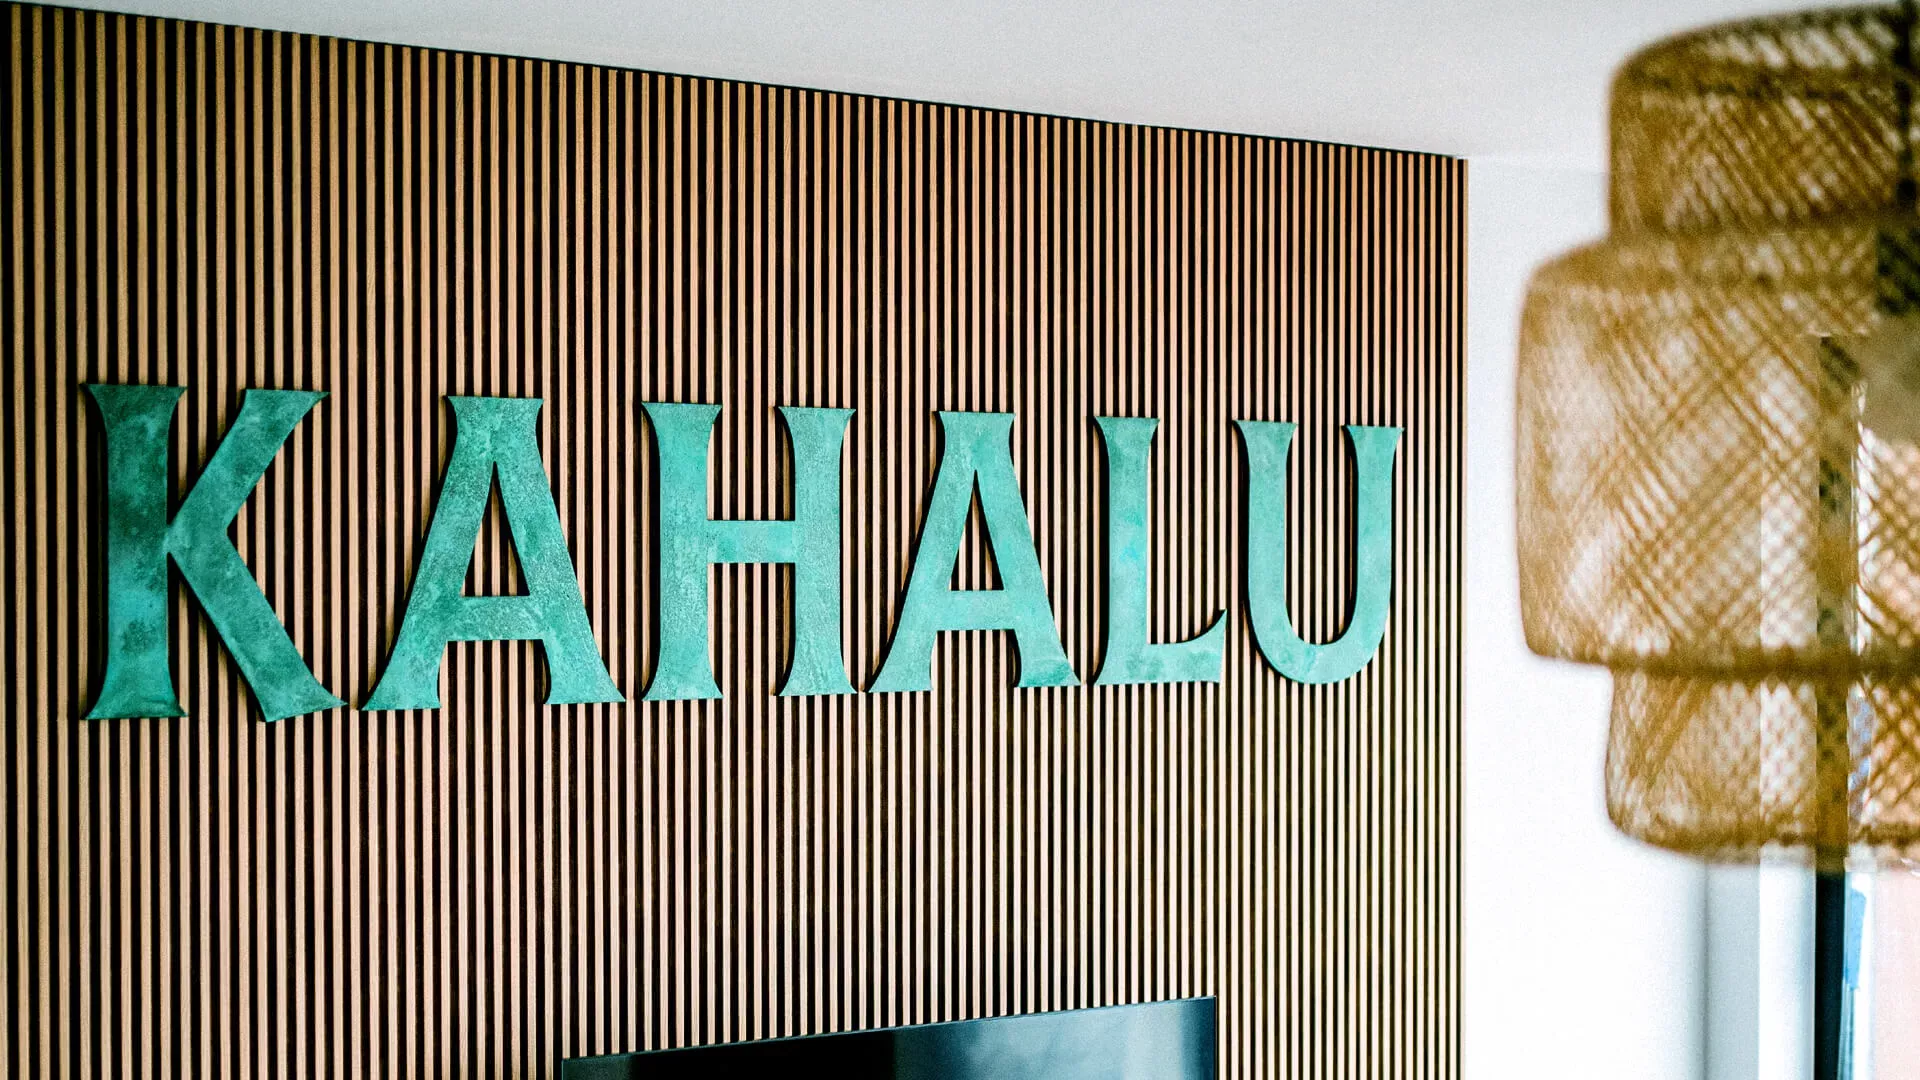 Kahalu - metalen letters in industriële stijl met een patina-afwerking